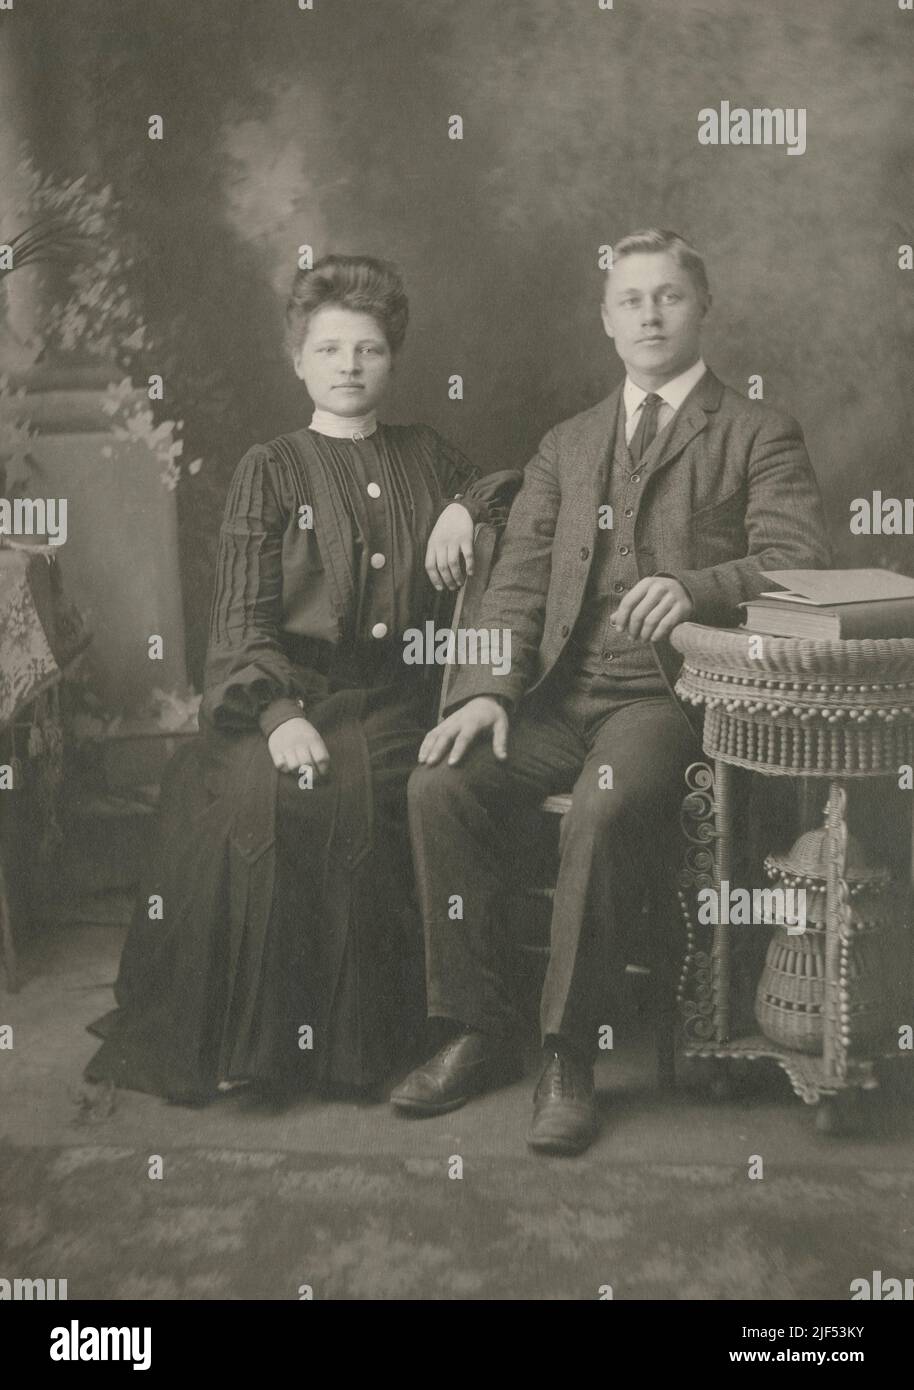 Antike Fotografie eines jungen unverheirateten Paares aus dem Jahr 1890s in oder in der Nähe von Fitchburg, Massachusetts, USA. Das gleiche Paar erscheint verheiratet mit Ringen in Alamy Foto #2JF53MX. QUELLE: ORIGINALE FOTOKARTE Stockfoto